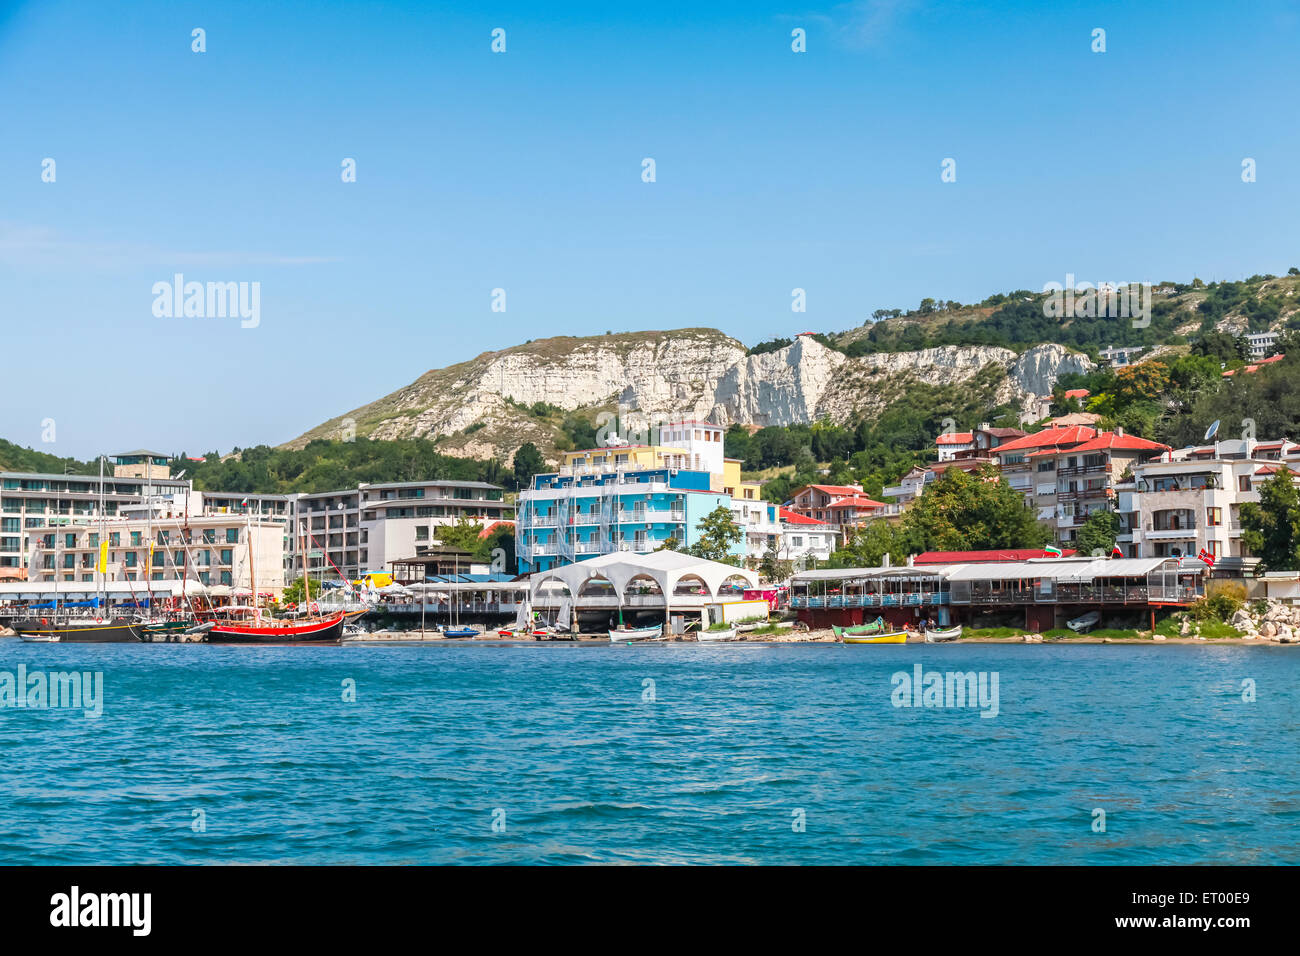 Paysage urbain d'été de la ville de Balchik, côte de Mer Noire, région de Varna, Bulgarie Banque D'Images